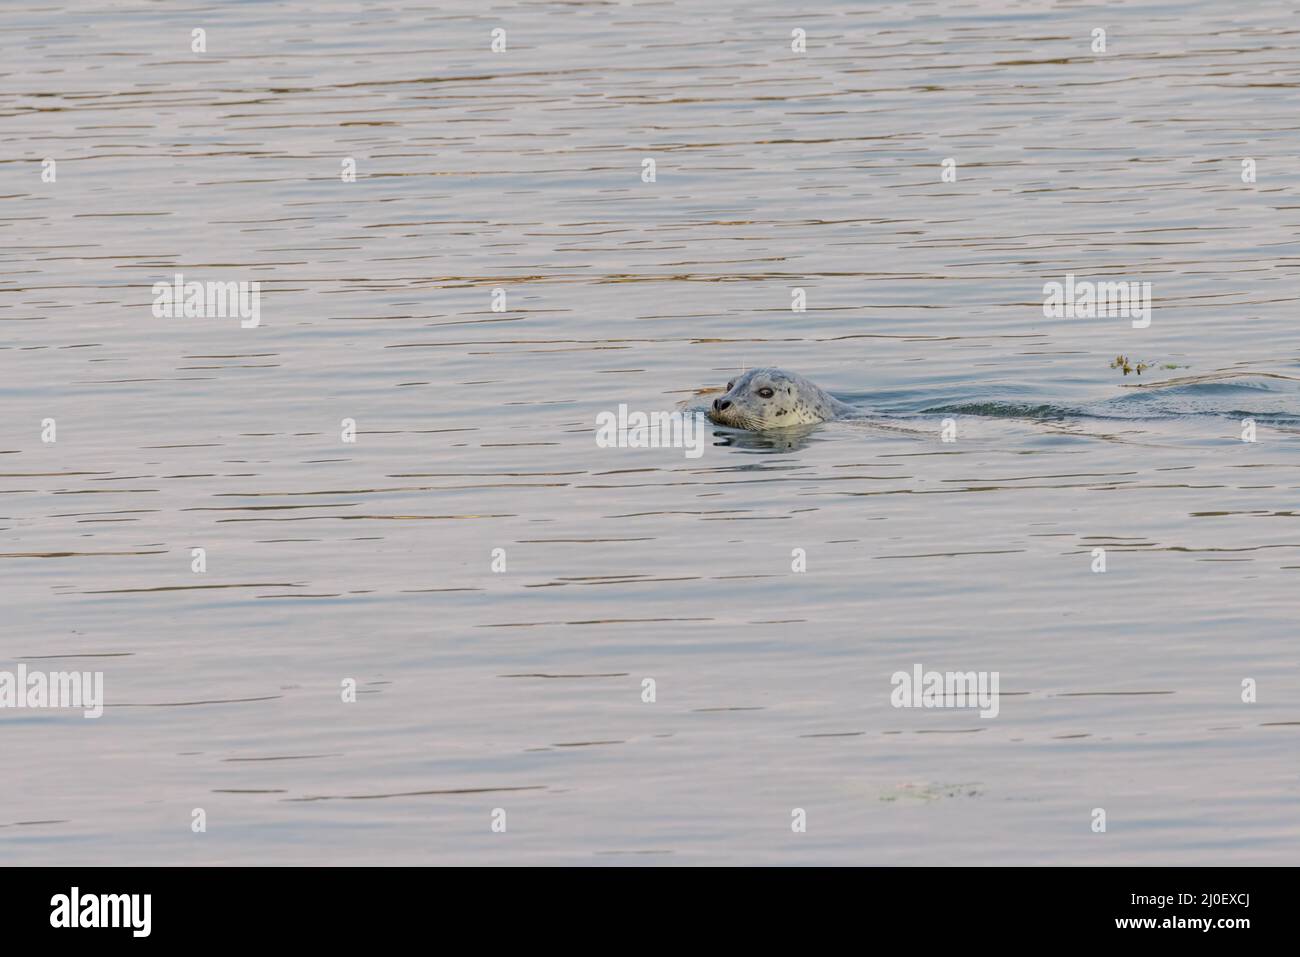 le phoque nage dans l'eau du port dans un océan pacifique calme Banque D'Images